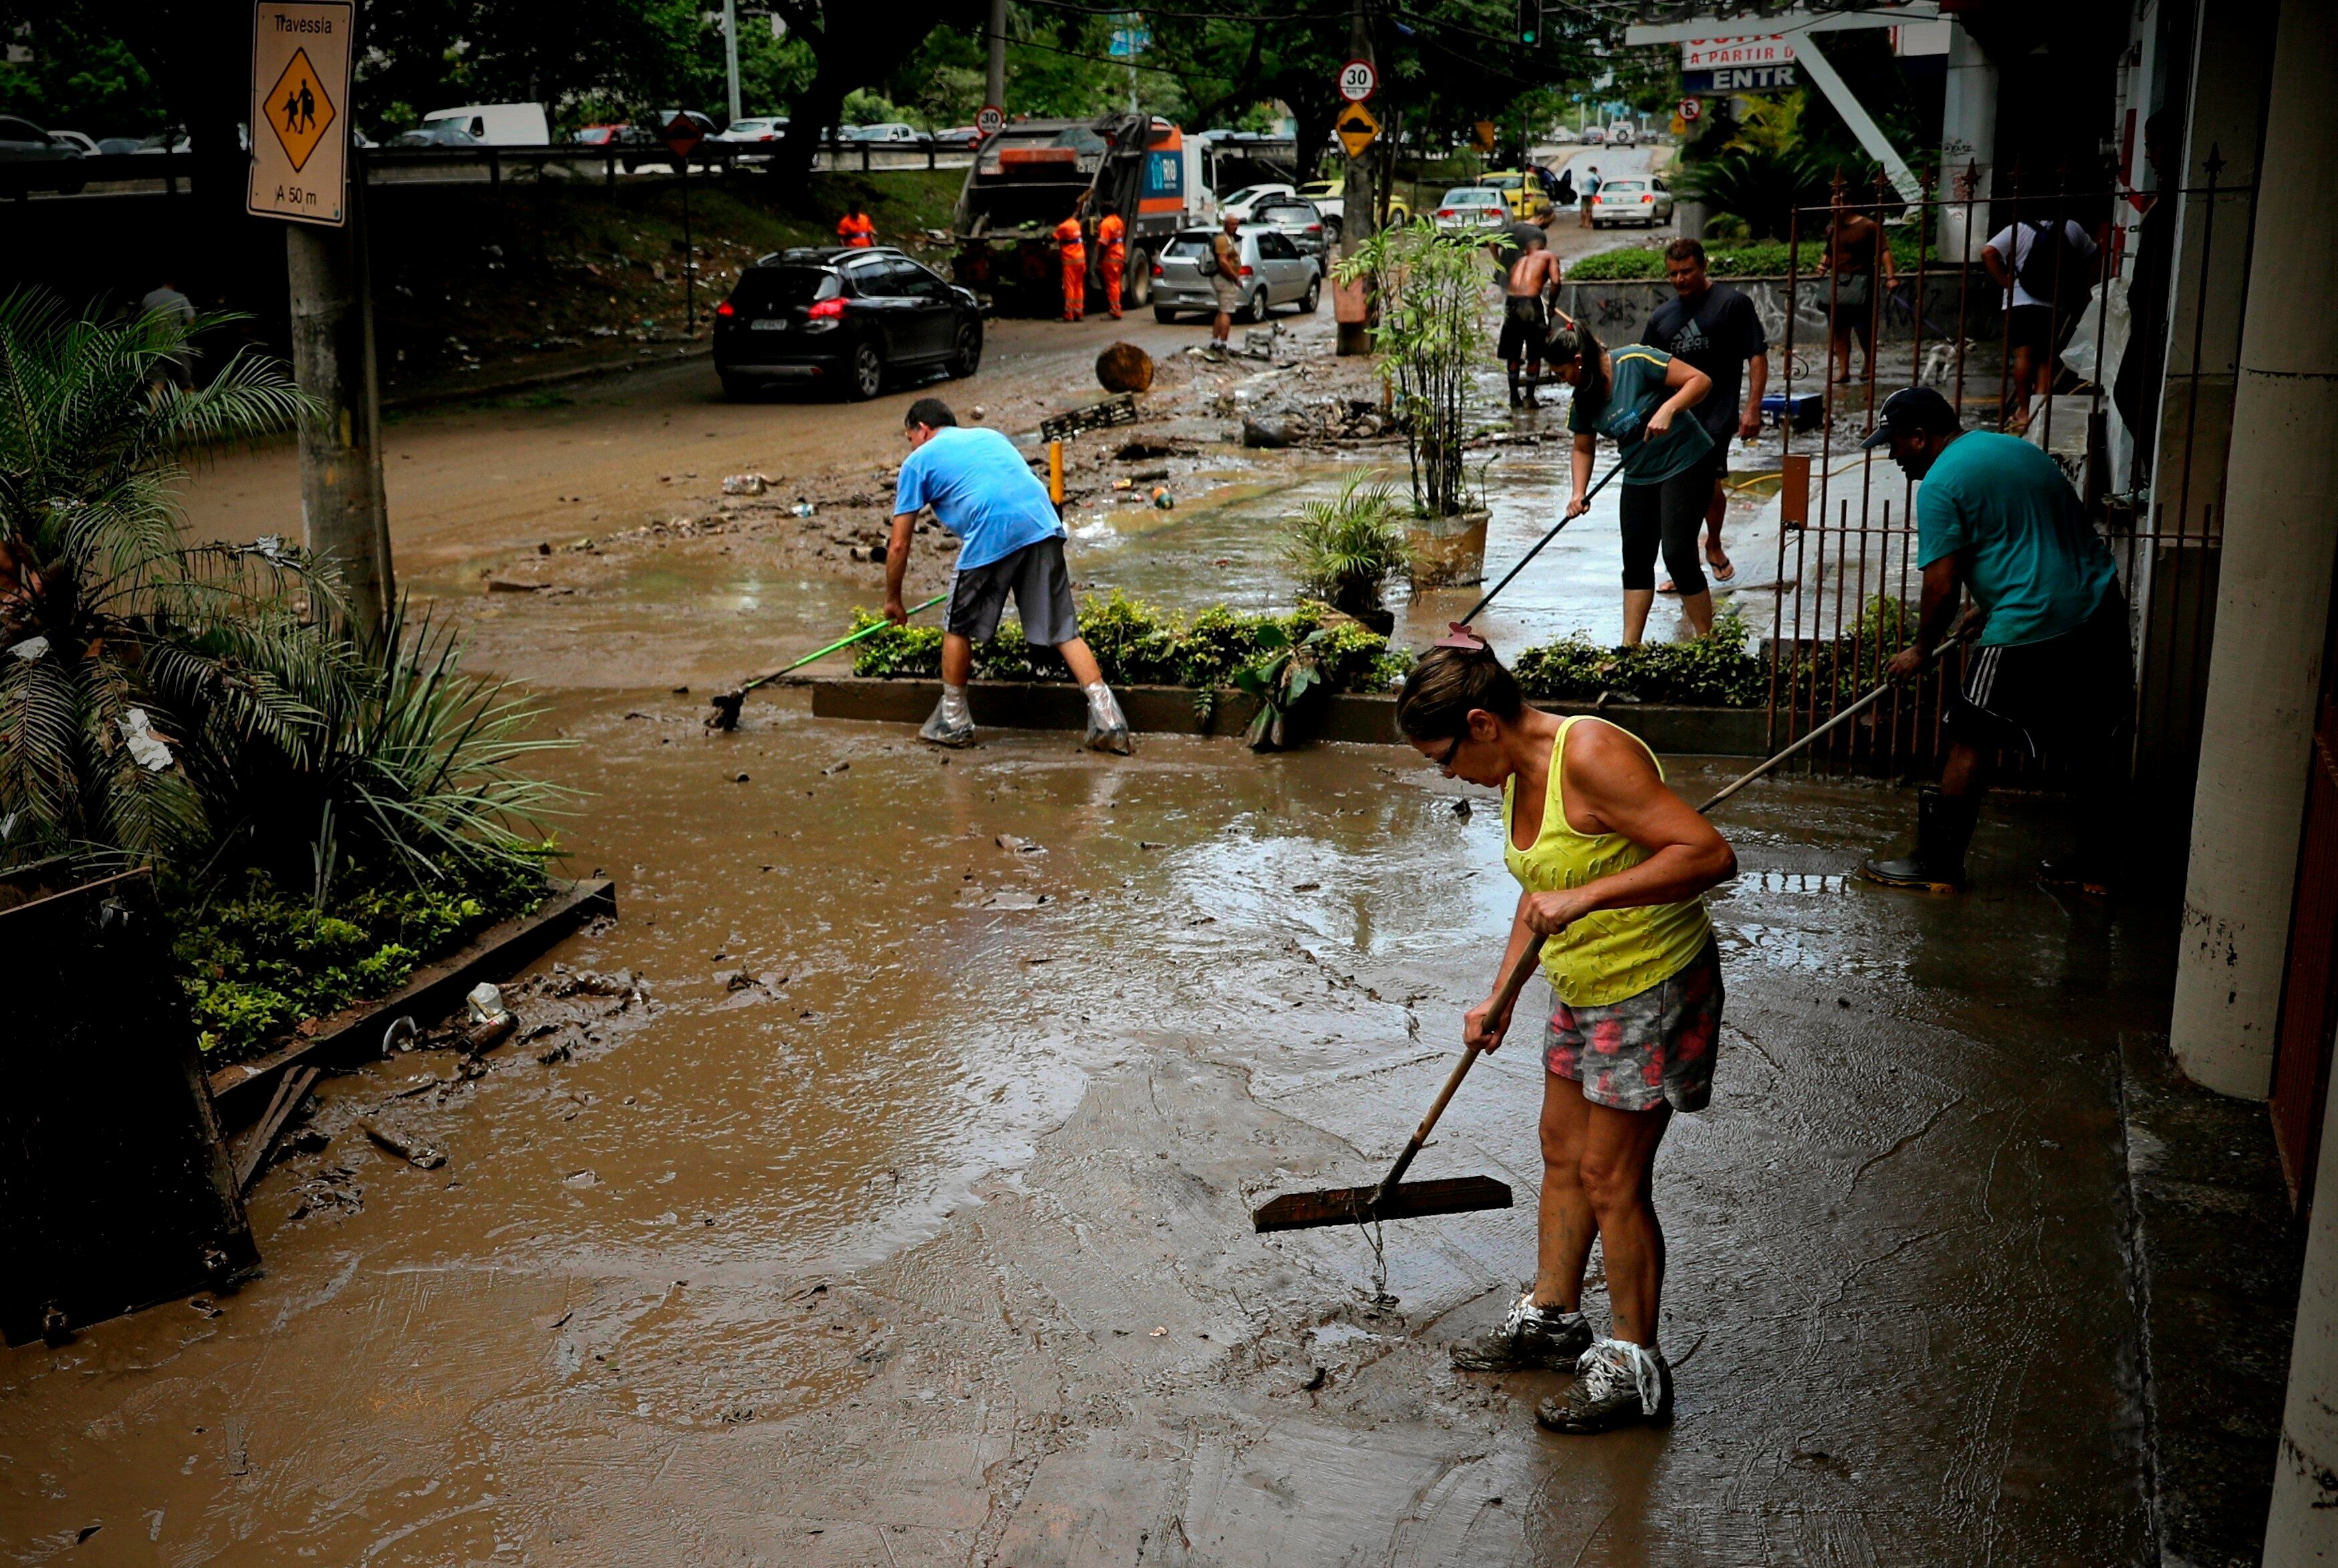 La localidad más afectada fue Foz do Iguaçu, donde resultaron damnificadas 600 viviendas después de soportar vientos por encima de los 79 kilómetros por hora durante el sábado. Fotografía de archivo. EFE/Antonio Lacerda